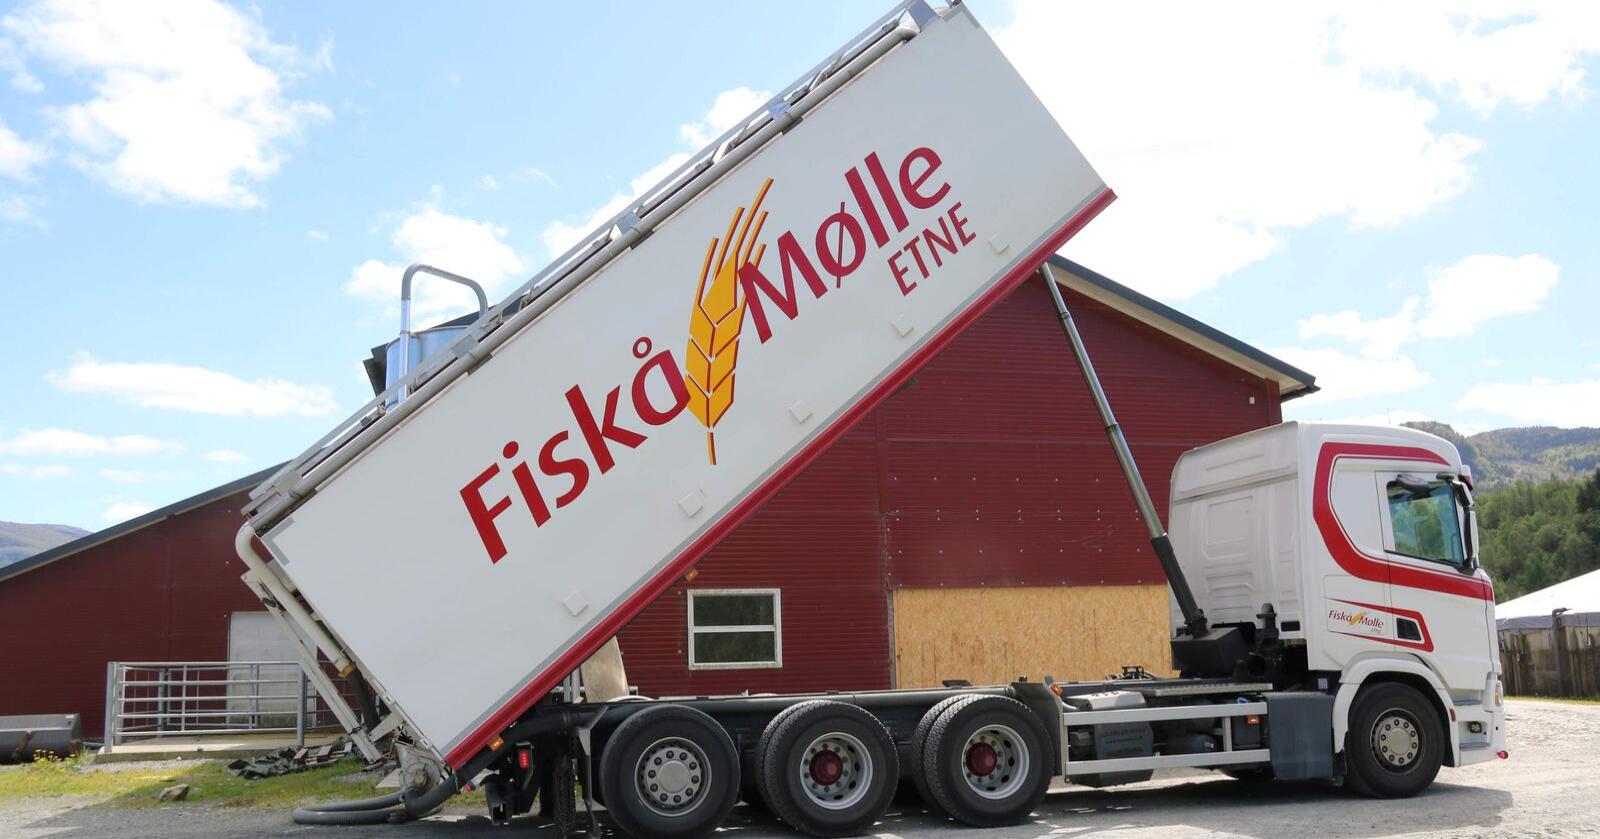 BYGGER: Fiskå Mølle har kjøpt tomteareal i Trøndelag. Her er en kraftfôrbil på tur i Etne i Vestland. Foto: Dag Idar Jøsang